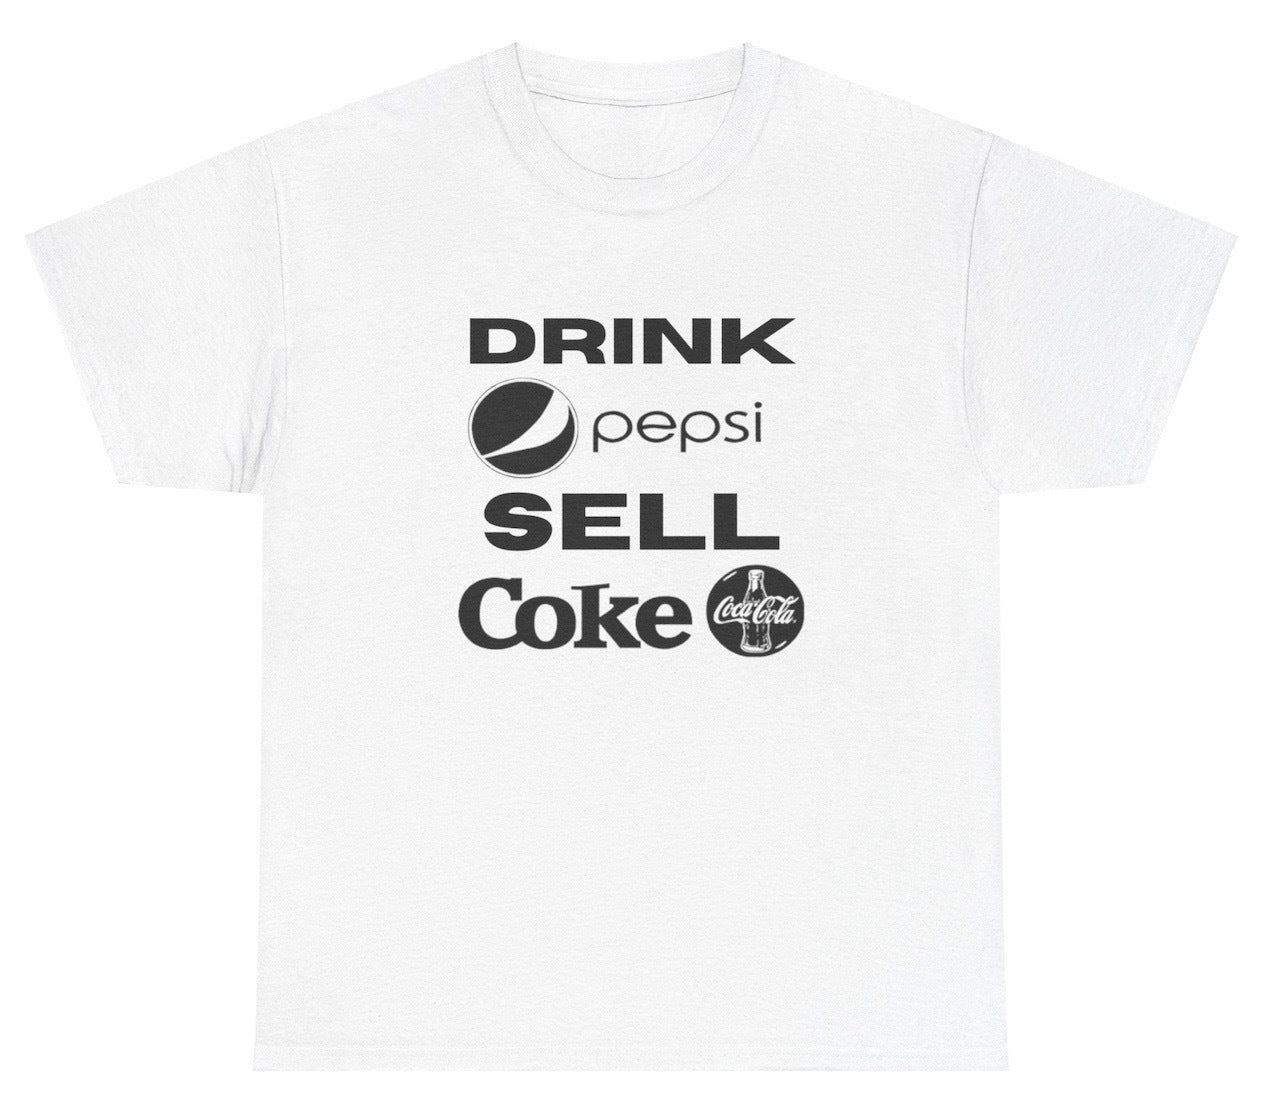 *NEW* Drink Pepsi Sell Coke Tee